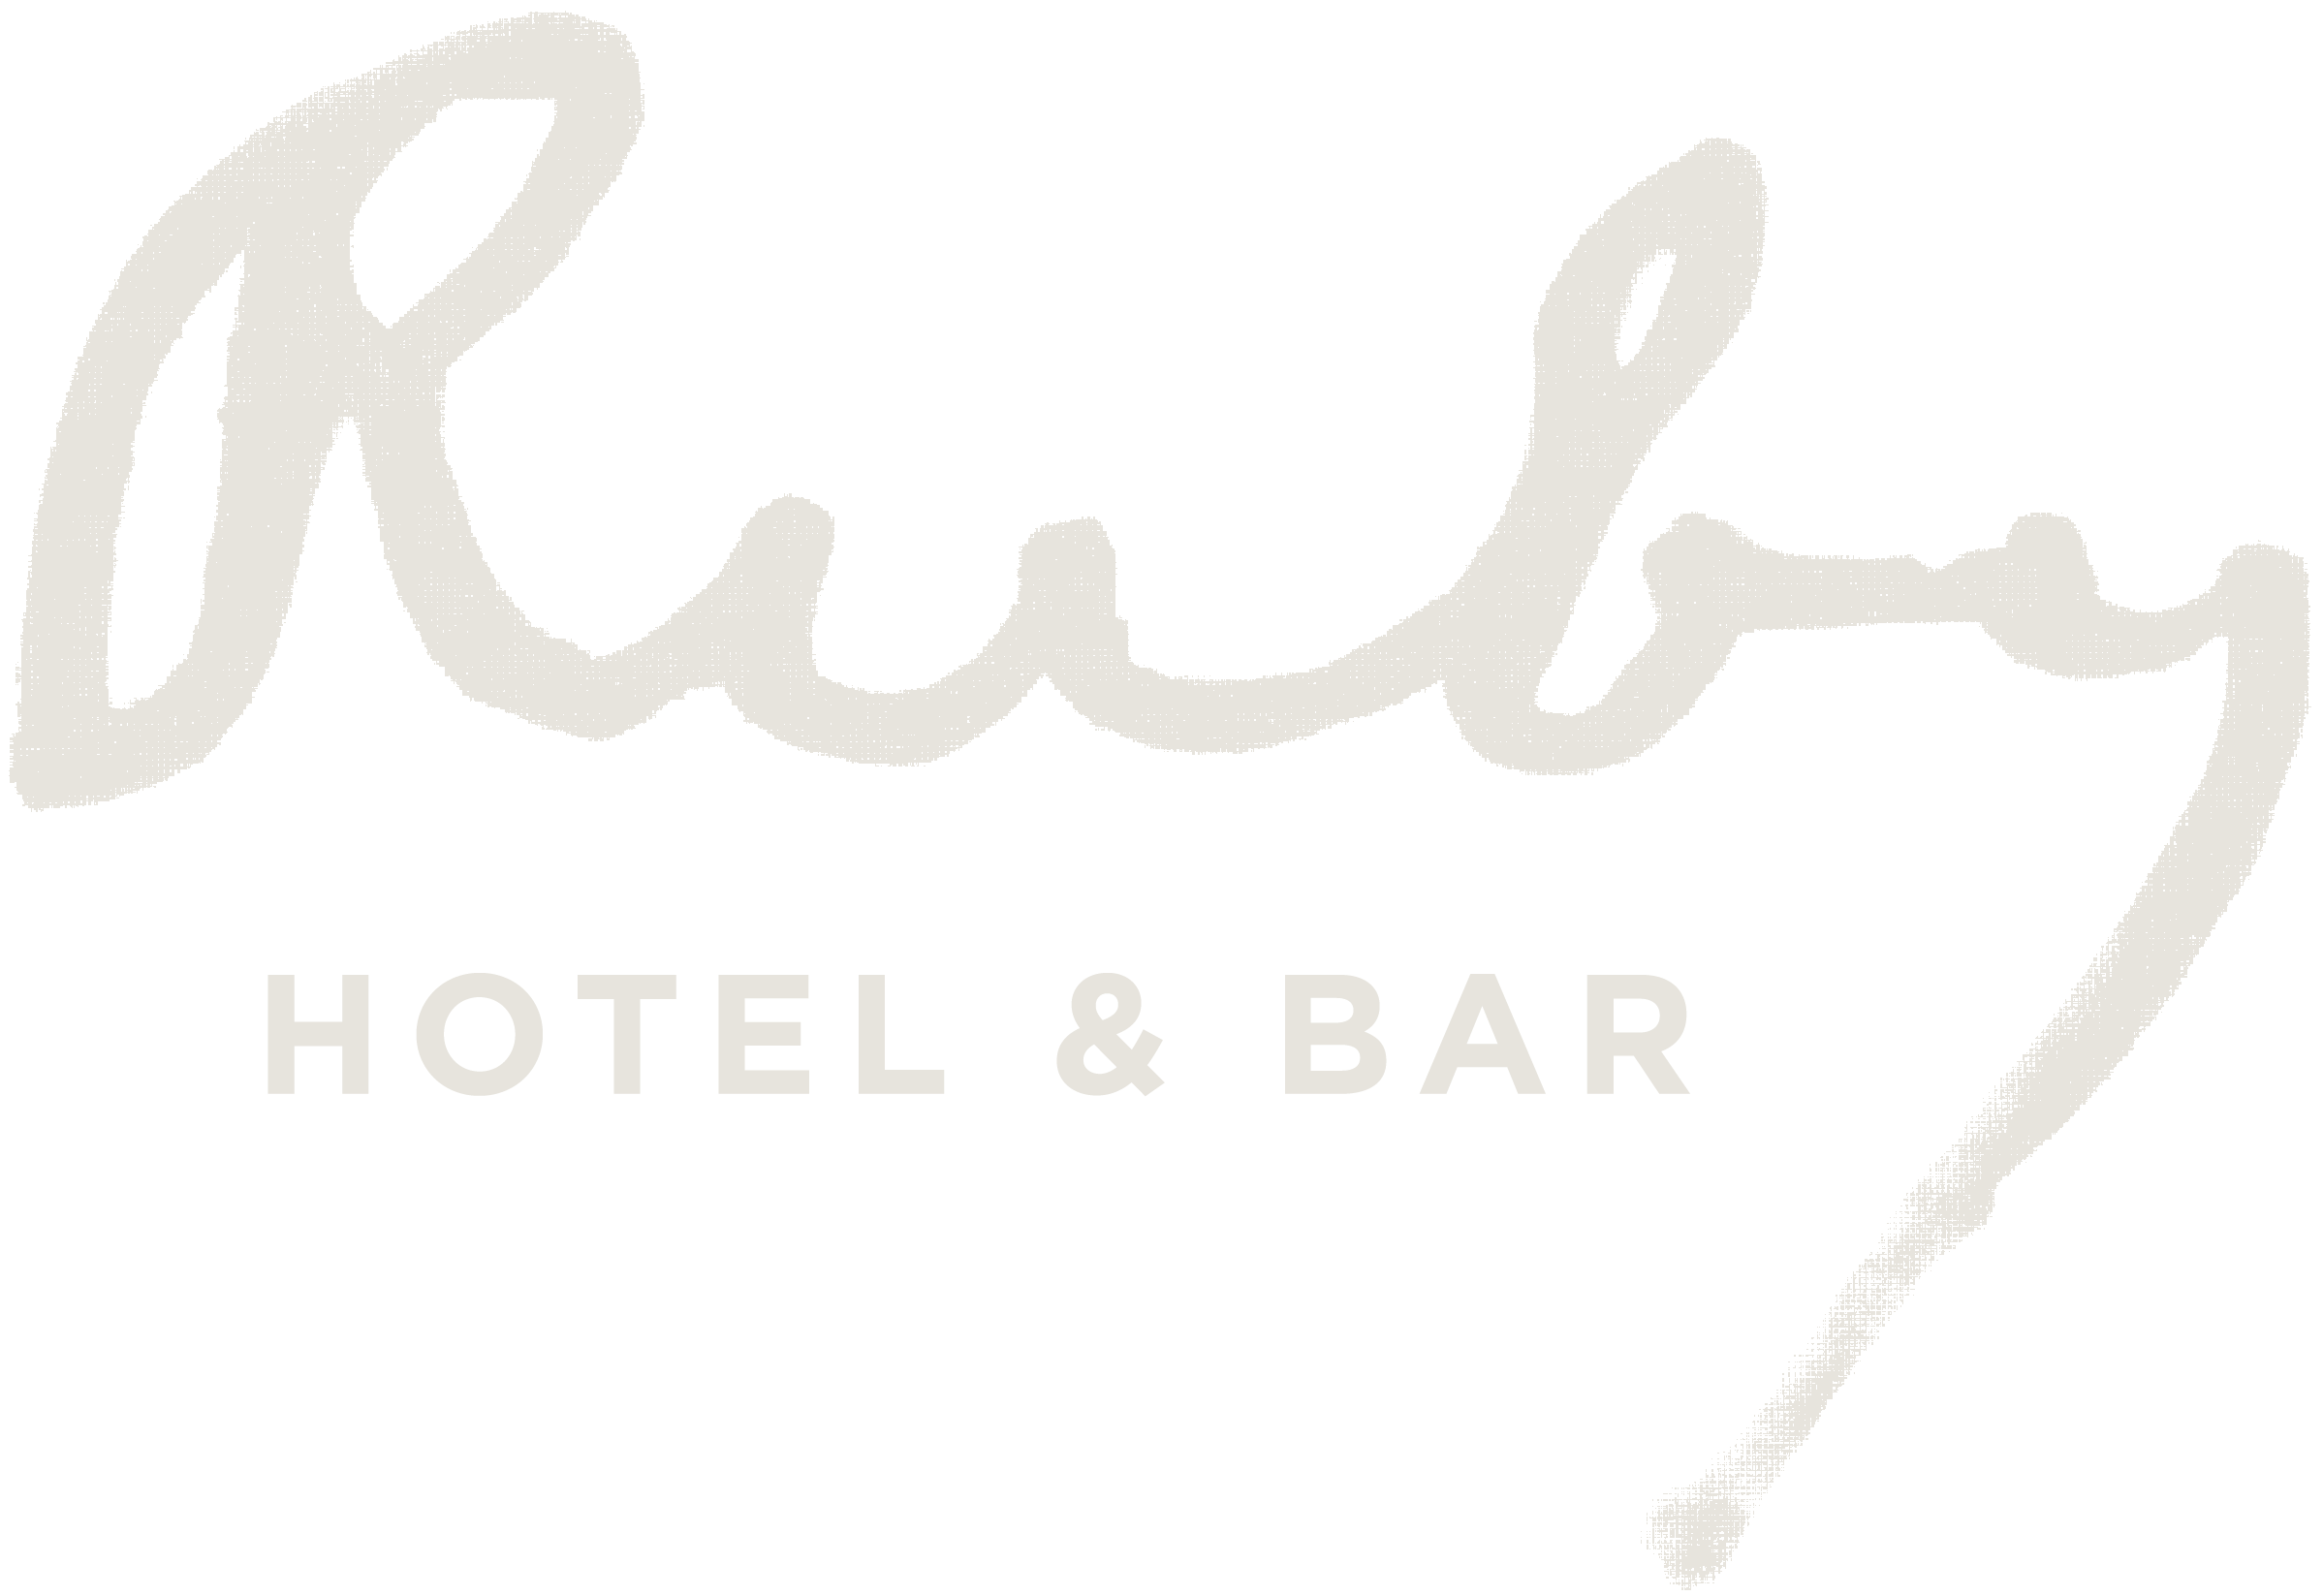 The Ruby Hotel & Bar